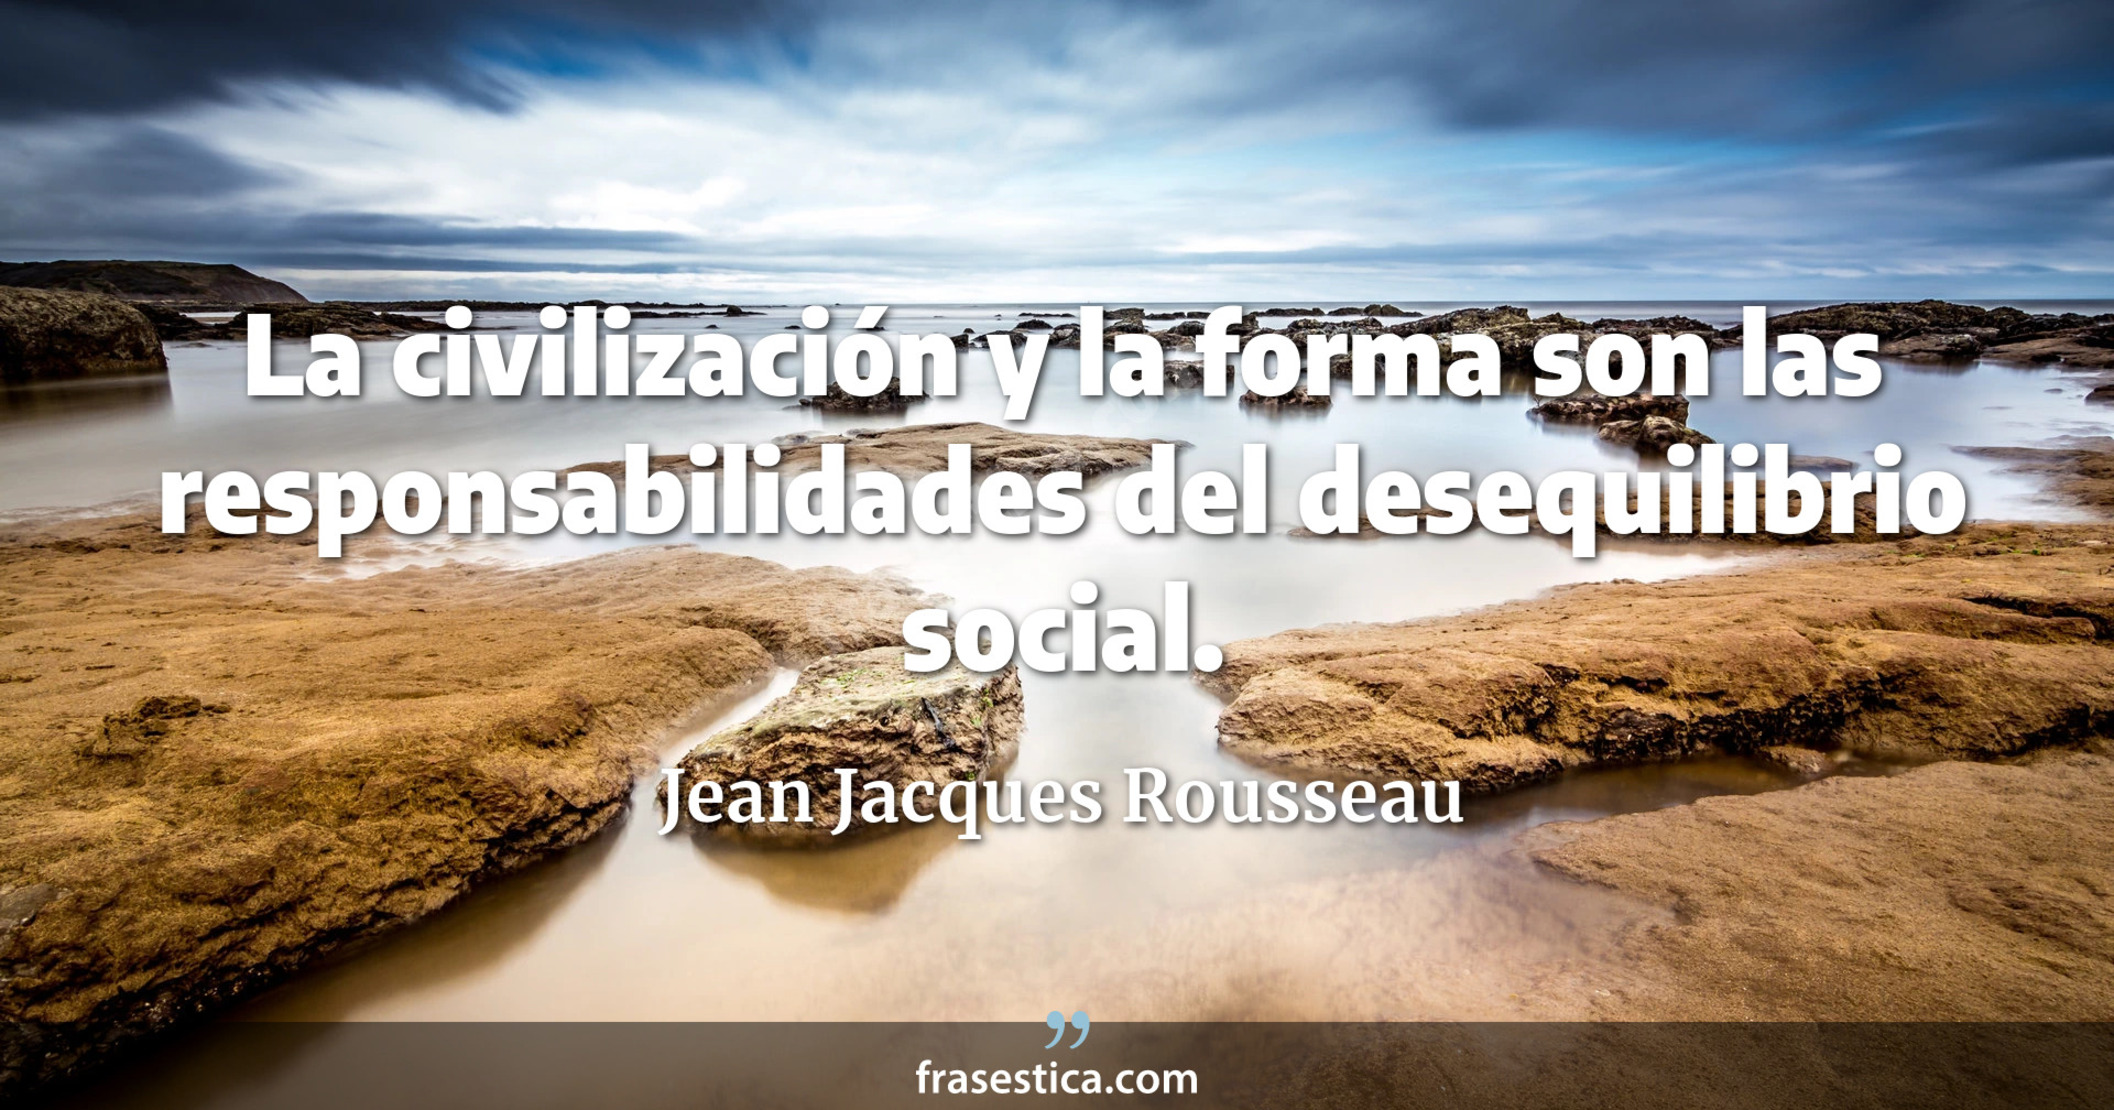 La civilización y la forma son las responsabilidades del desequilibrio social. - Jean Jacques Rousseau